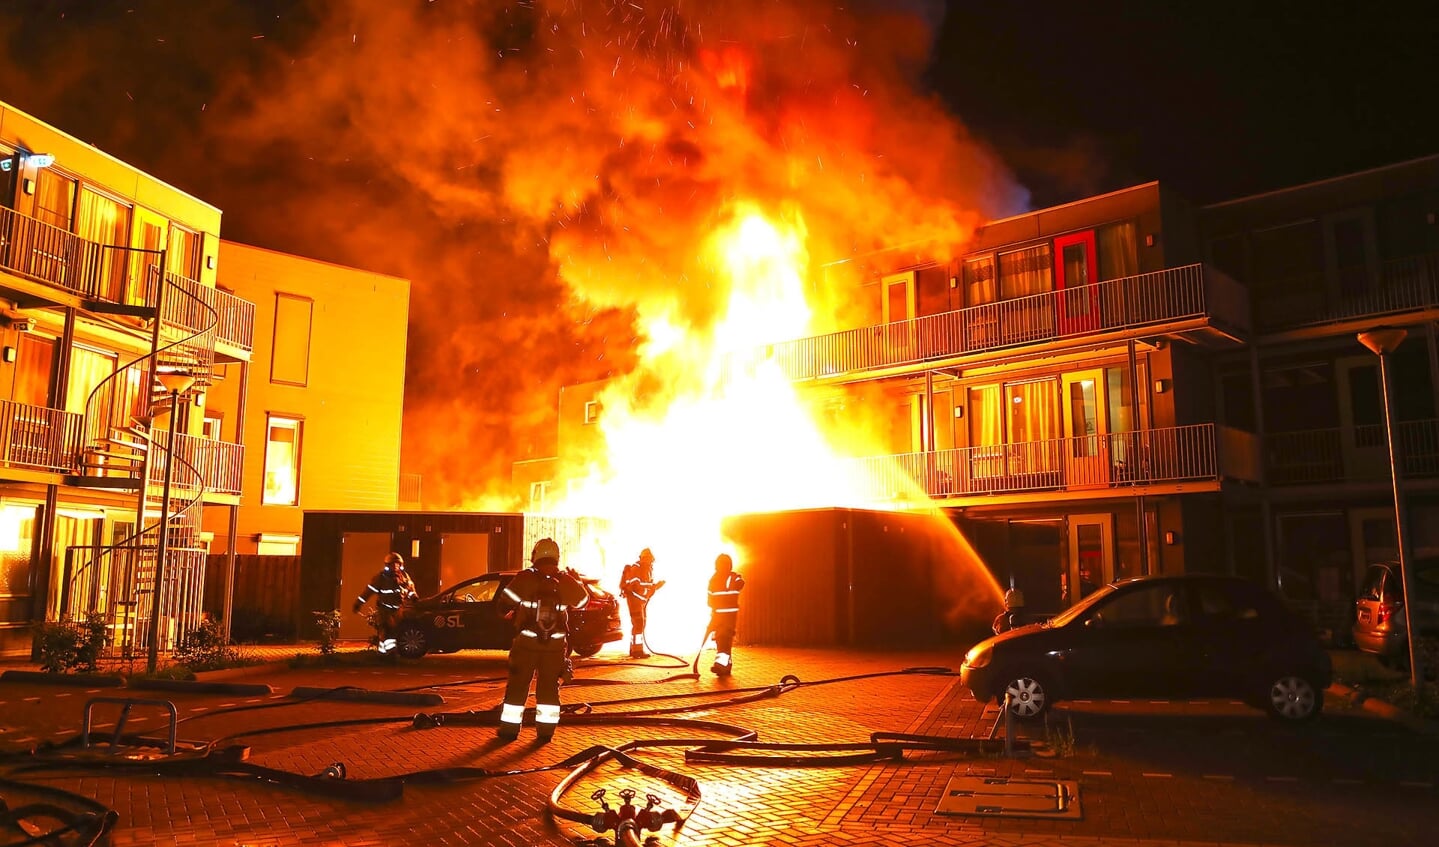 Appartementen in Berghemseweg verwoest door brand. (Foto: Gabor Heeres / Foto Mallo)